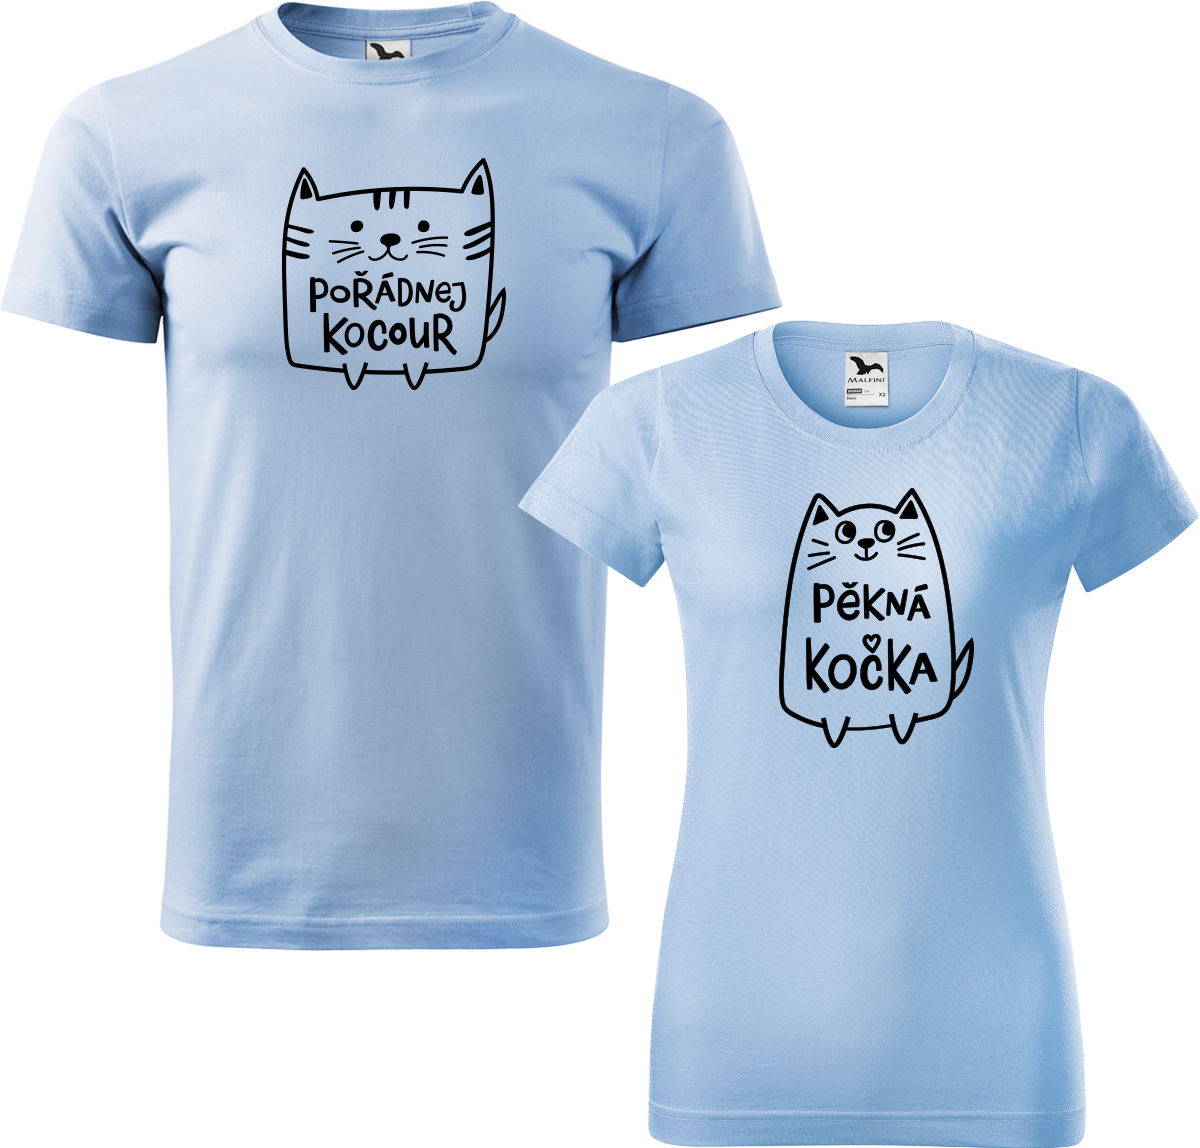 Trička pro páry - Pořádnej kocour a pěkná kočka Barva: Nebesky modrá (15), Velikost dámské tričko: M, Velikost pánské tričko: M